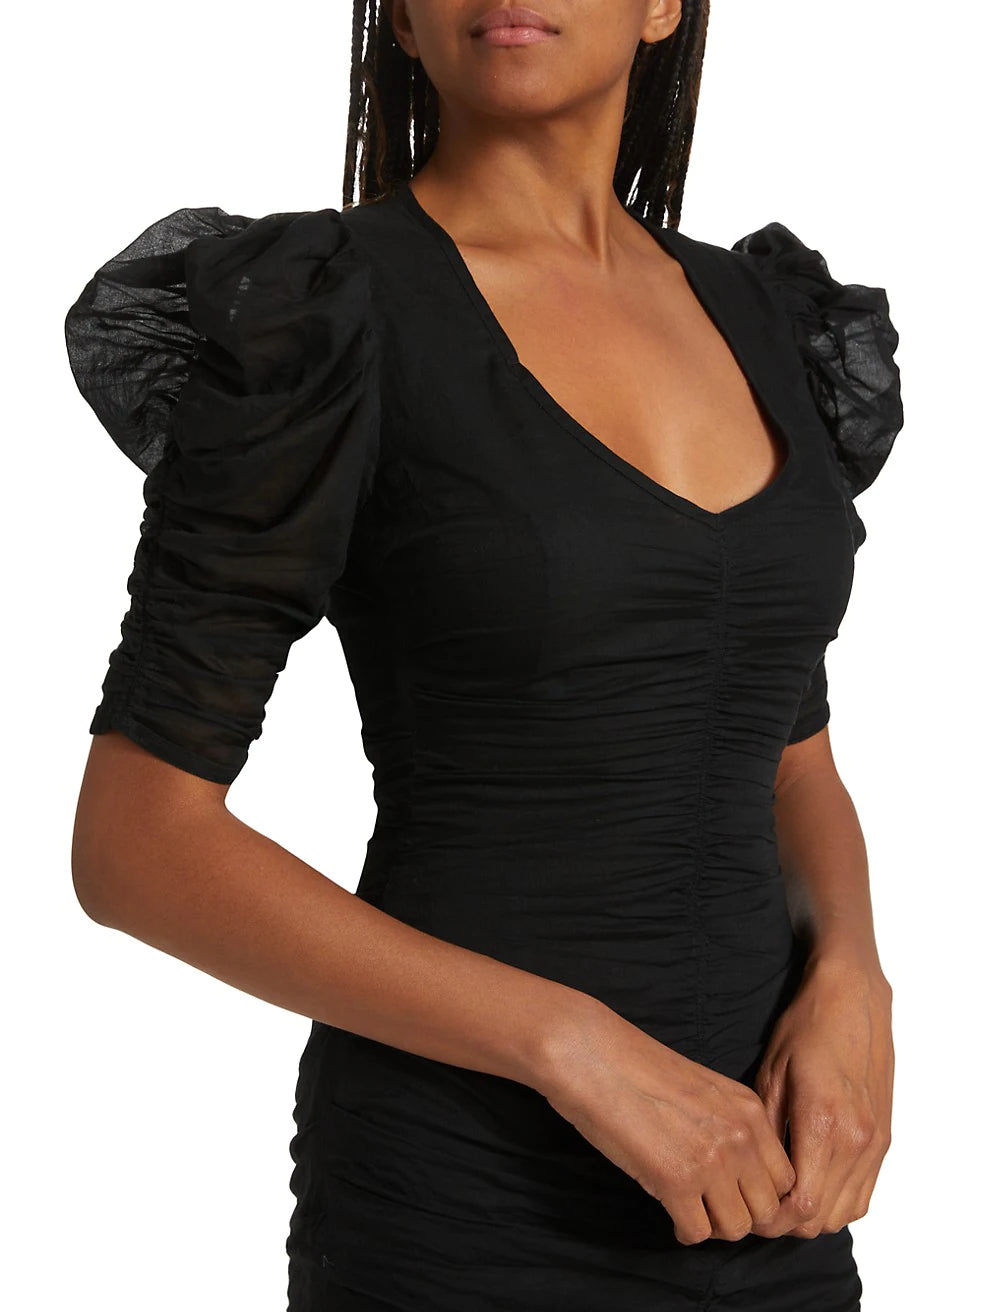 Sireny Dress in Black